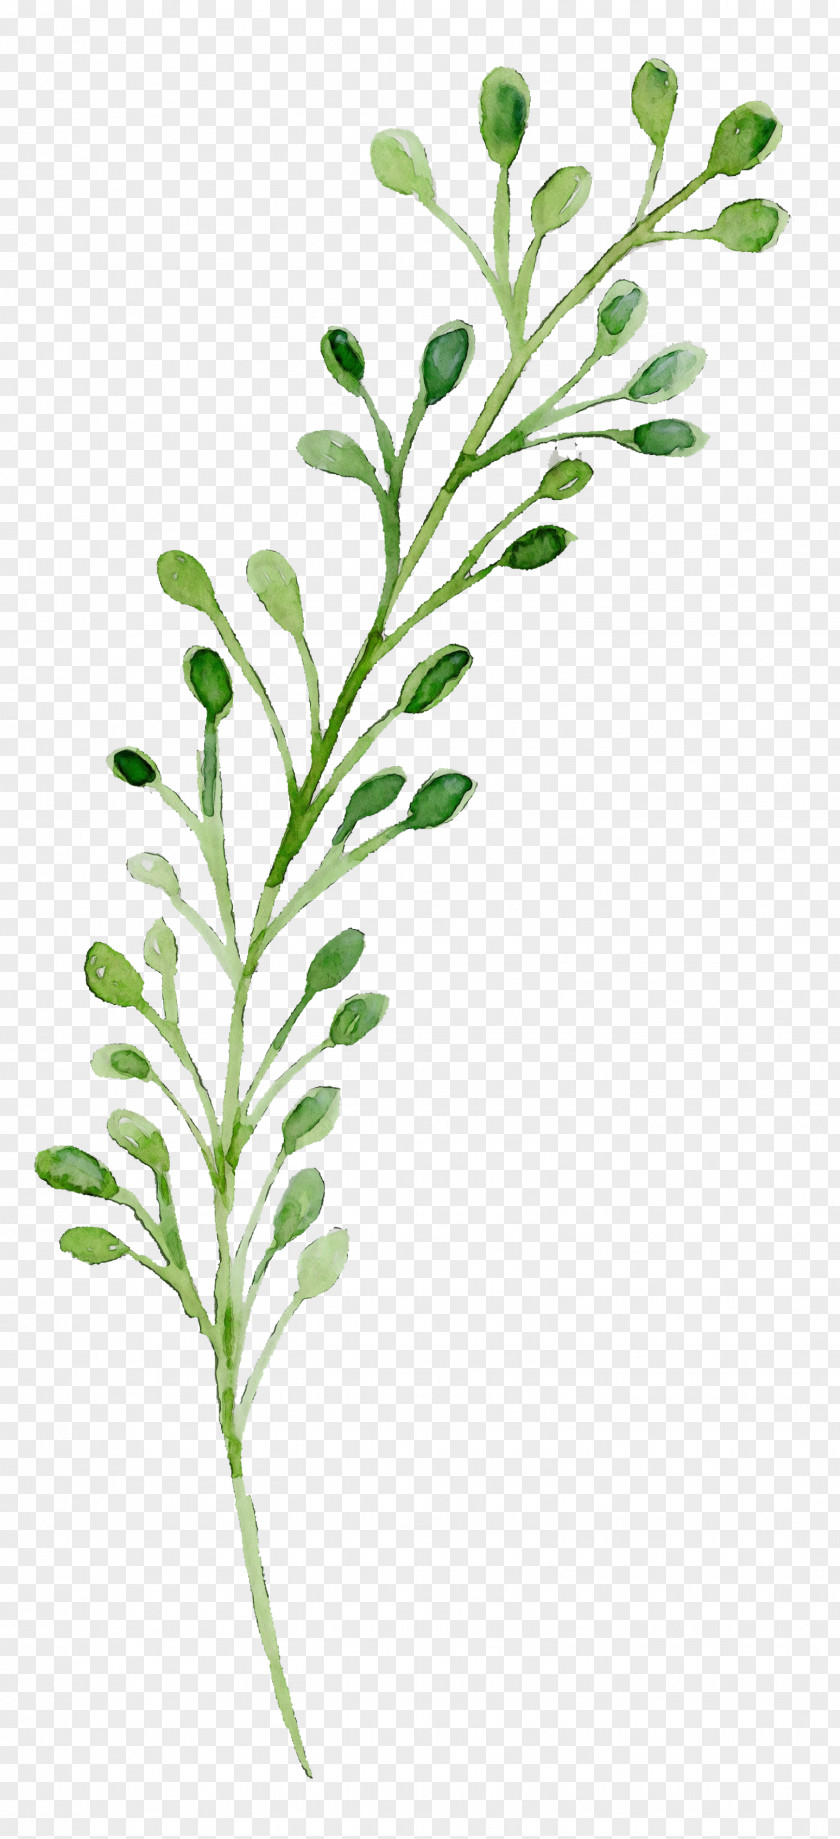 Leaf Plant Stem Herbal Medicine Twig Vegetable PNG